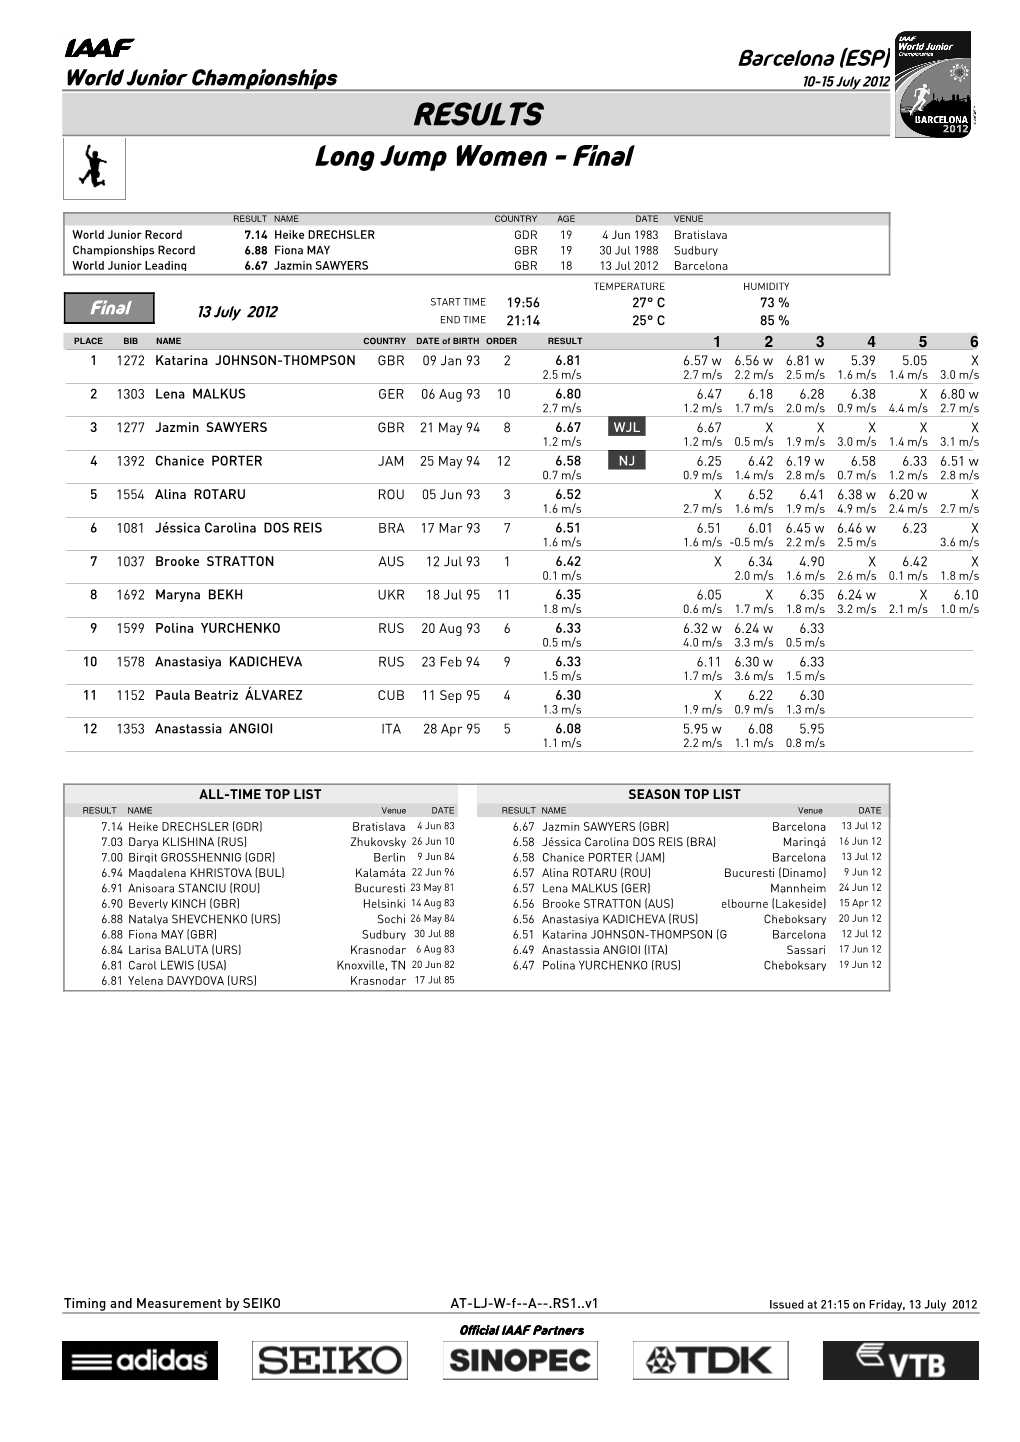 RESULTS Long Jump Women - Final